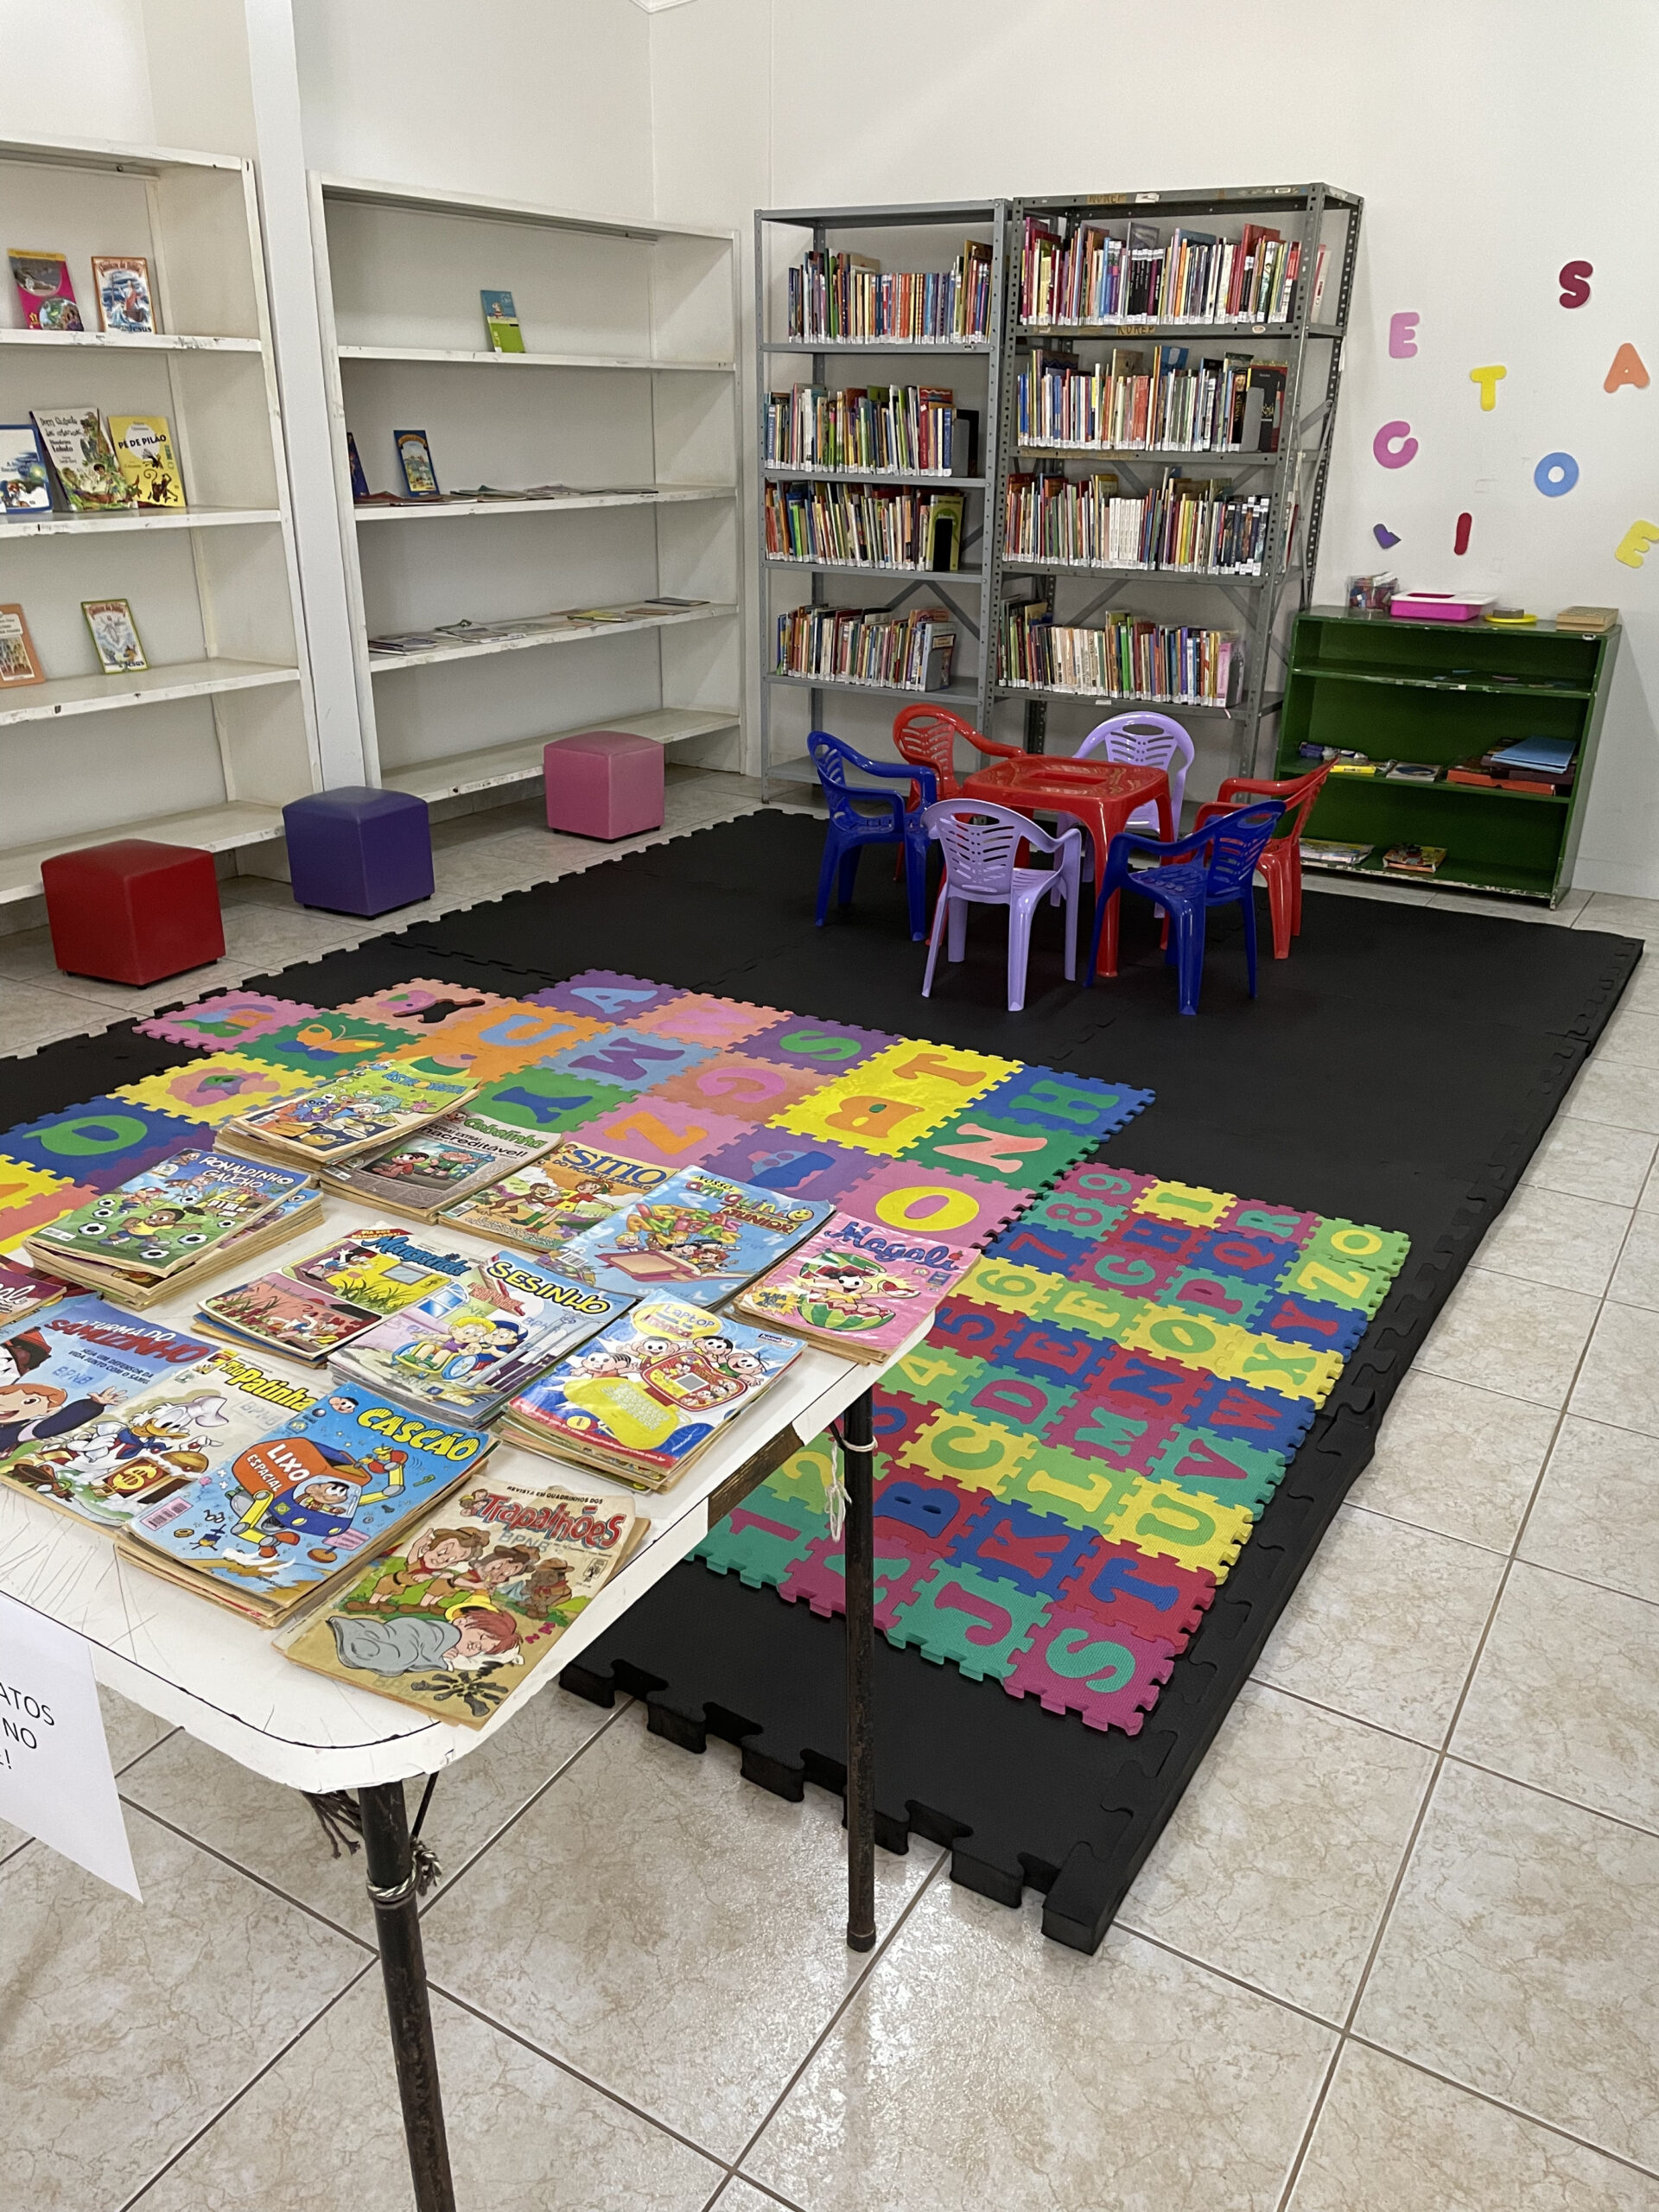 (foto: área destinada ao público infantil na biblioteca)